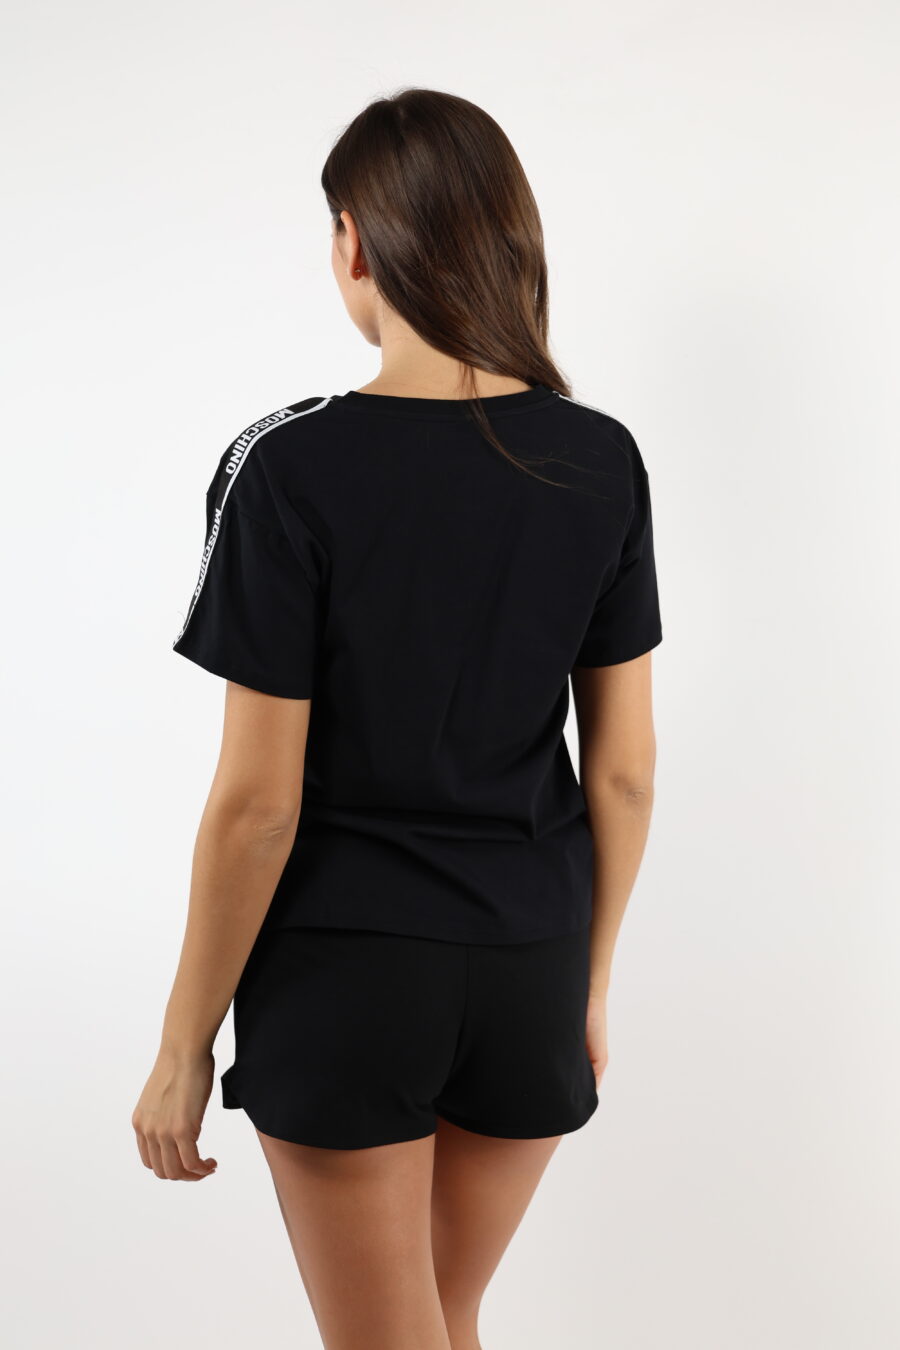 Camiseta negra corta con logo en cinta hombros blanco - 110498